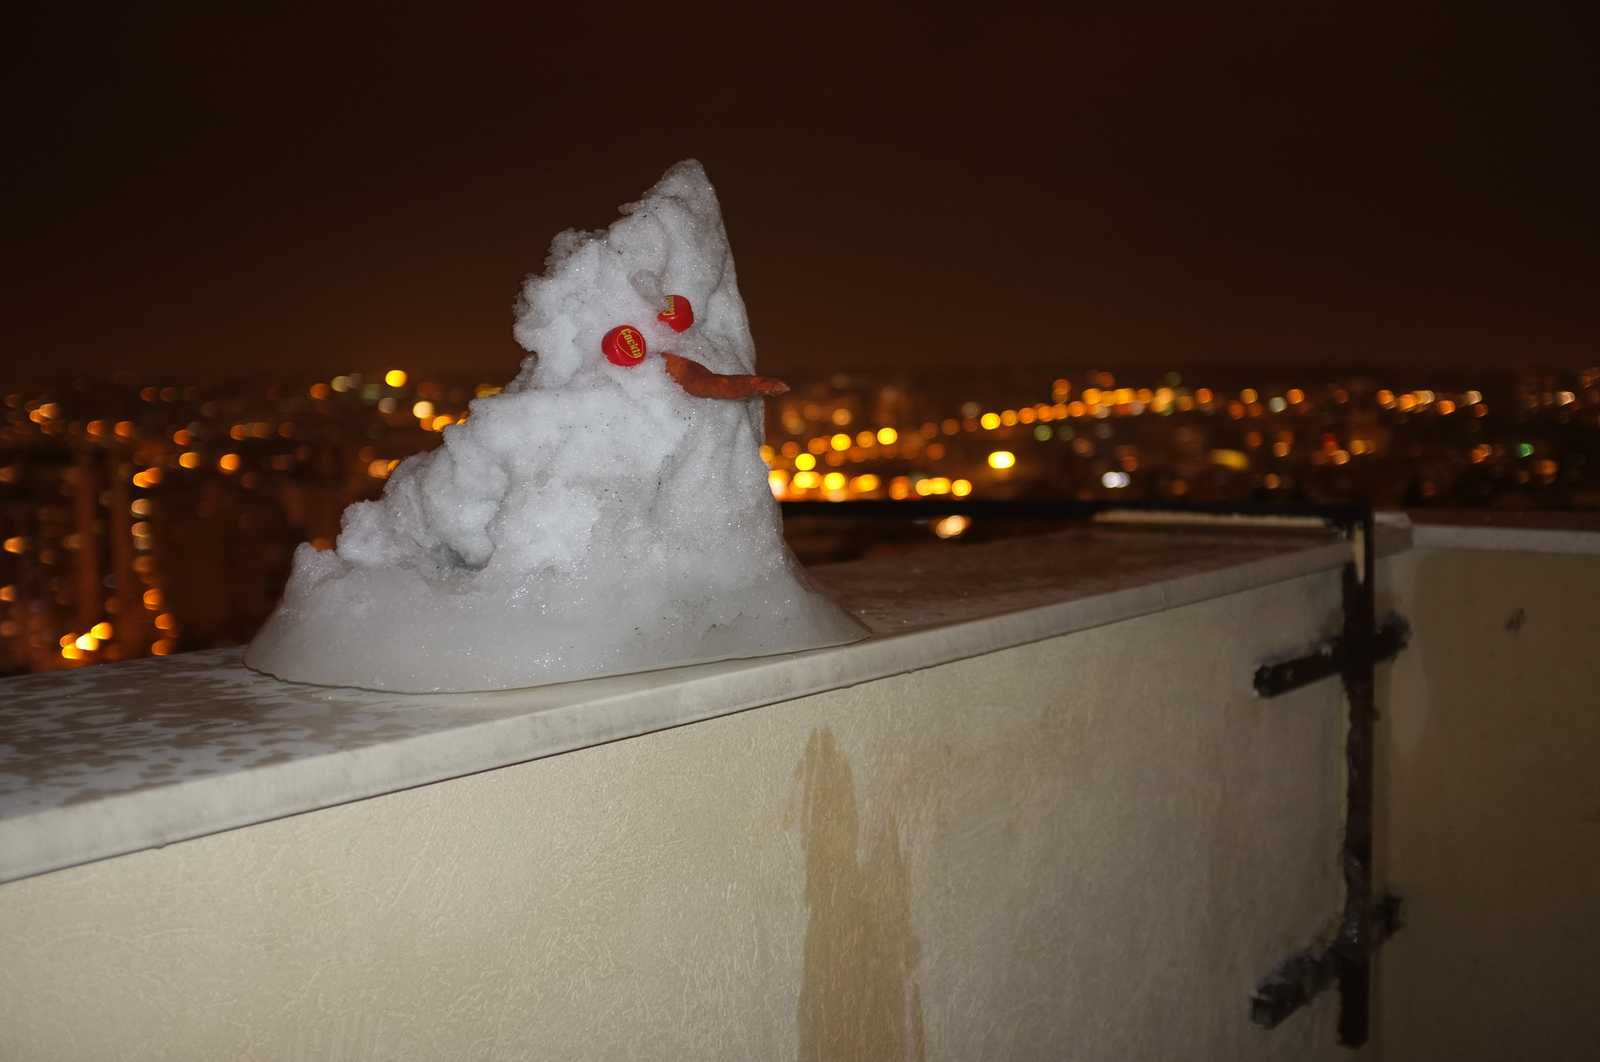 The snowman's sin